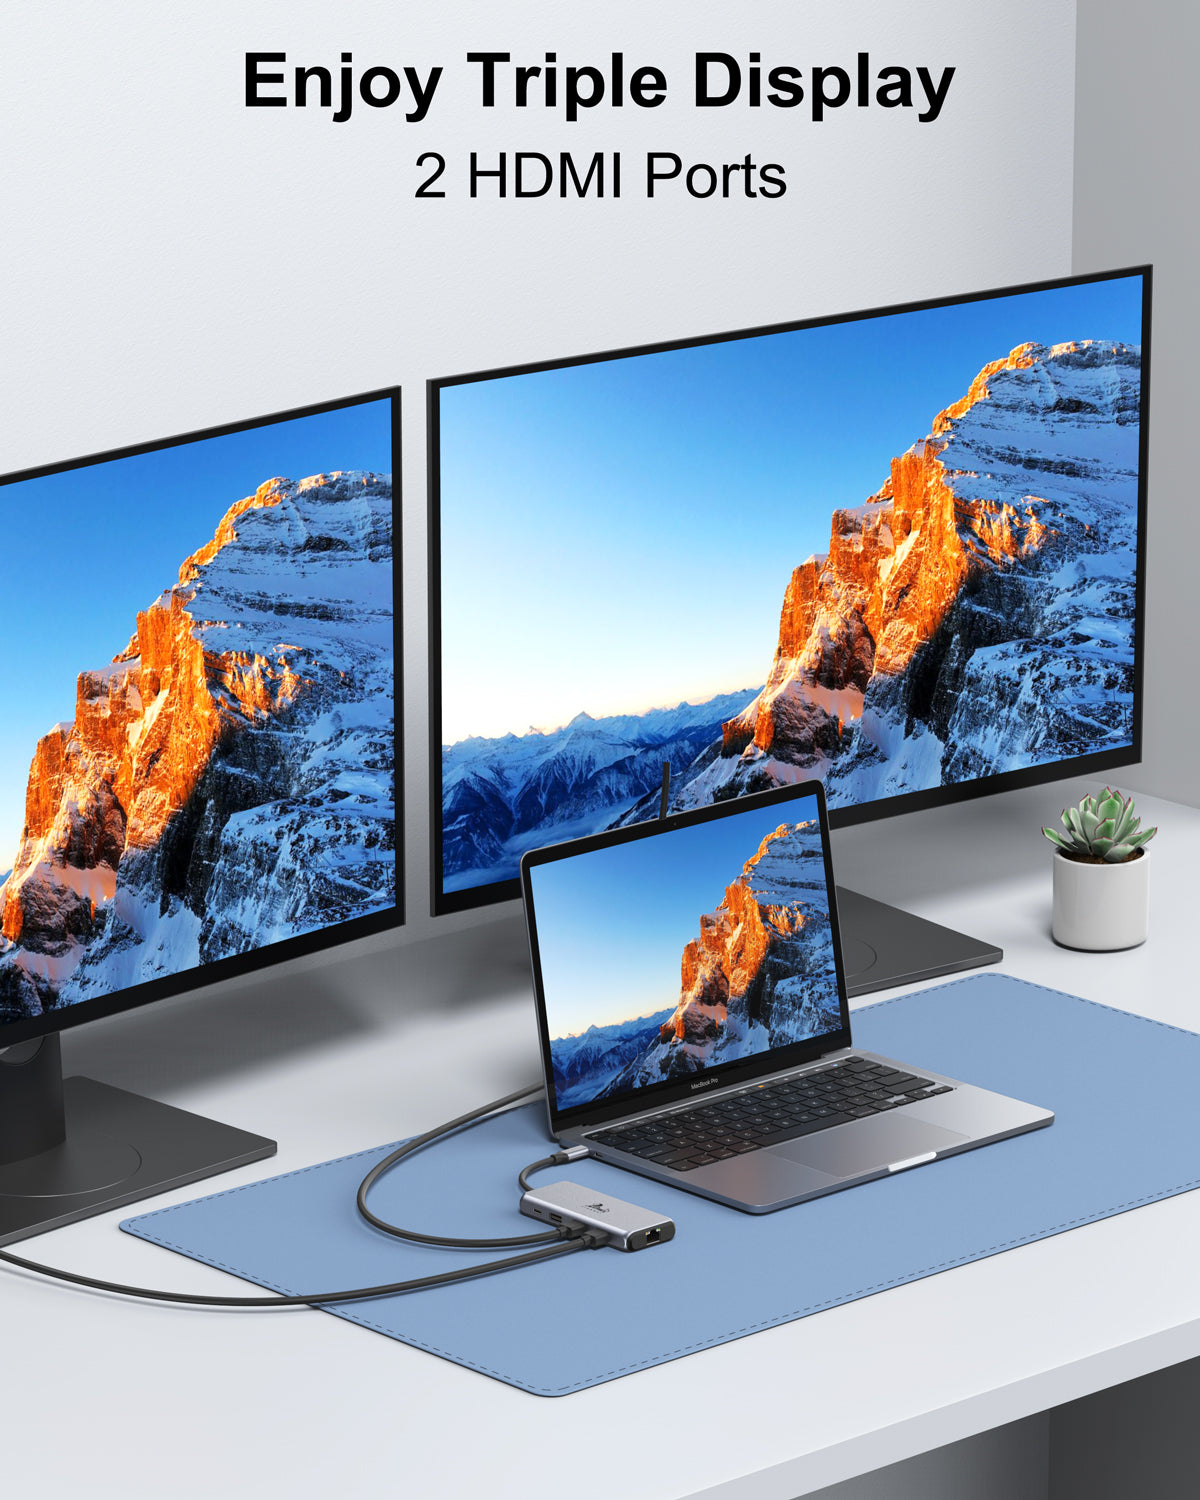 Lionwei USB C Hub Dual 4K@60Hz HDMI 9-IN-1